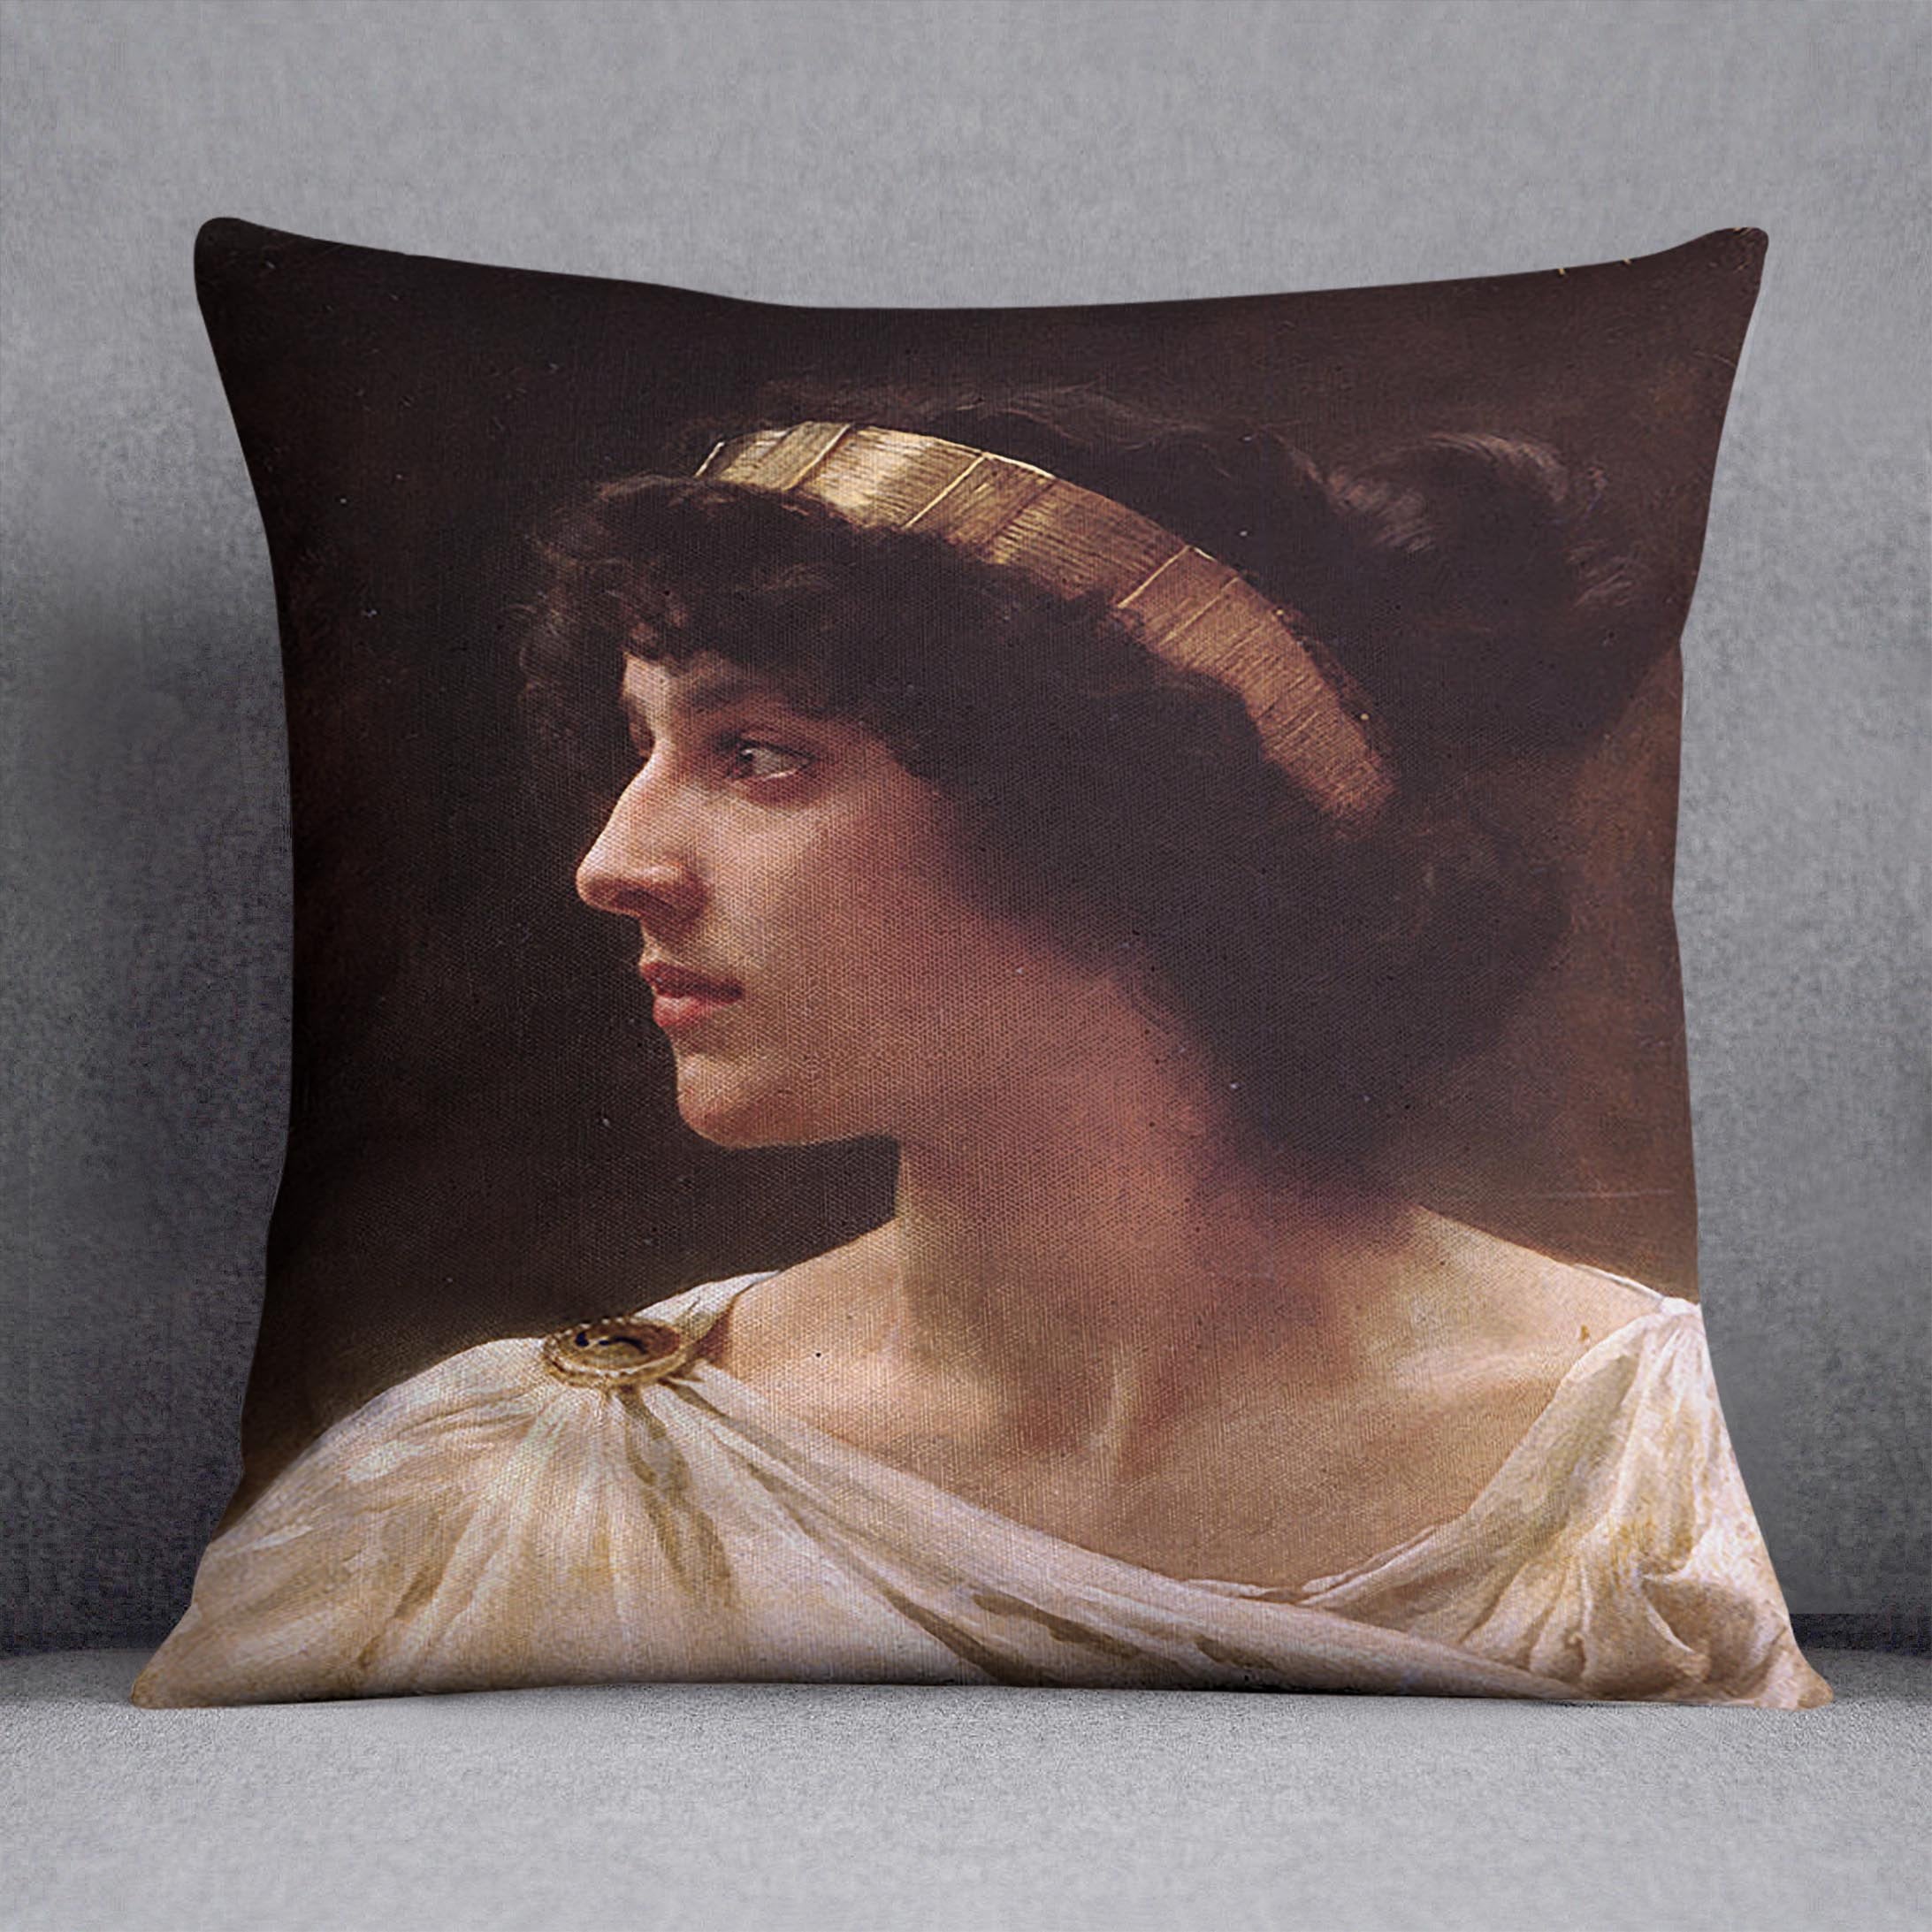 Irene By Bouguereau Throw Pillow